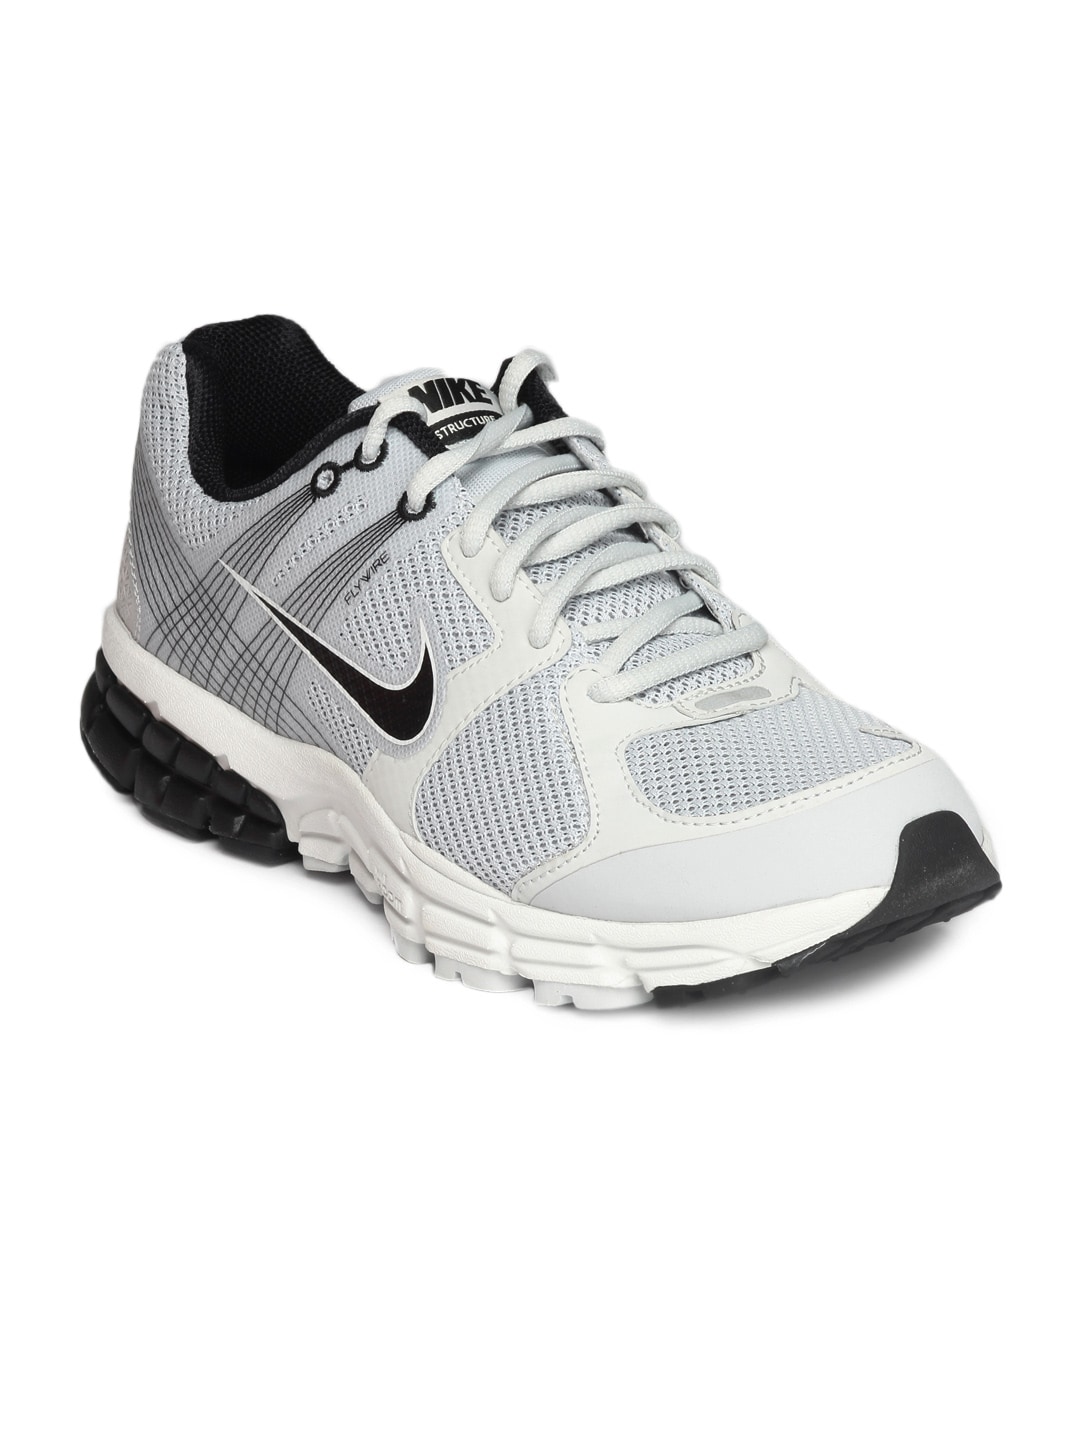 Nike Men Grey & White Sports Shoes